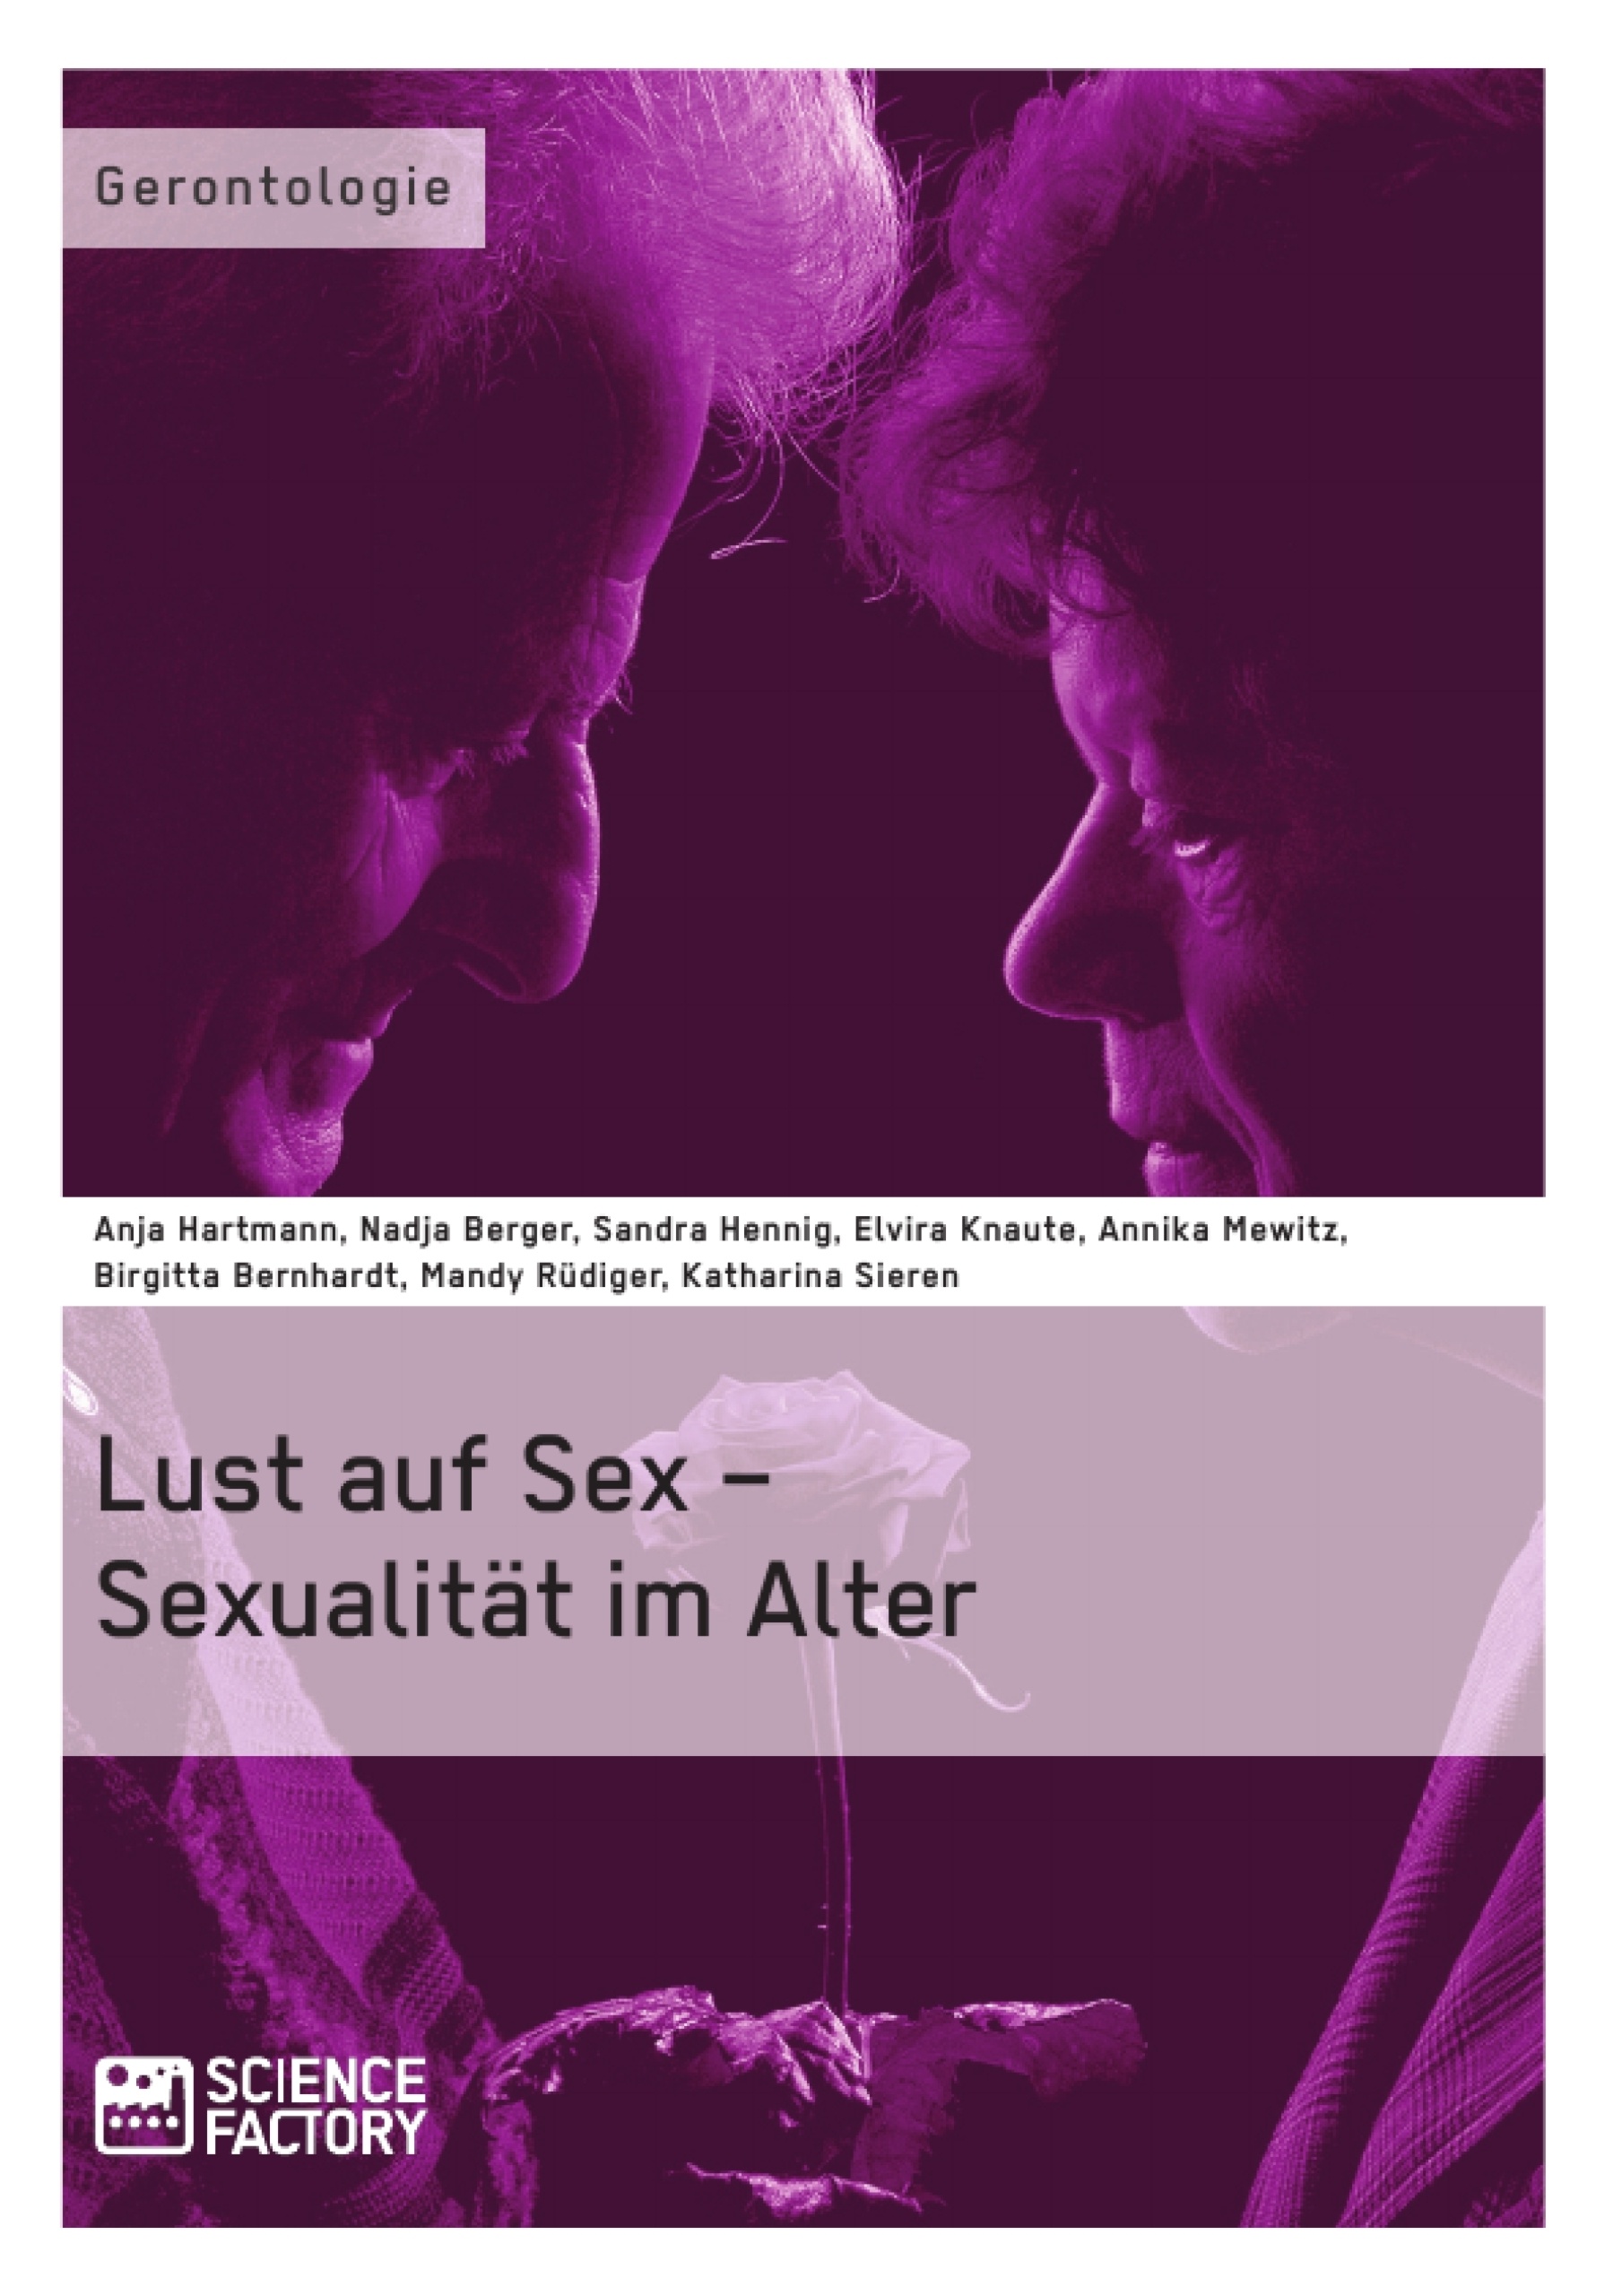 Título: Lust auf Sex – Sexualität im Alter